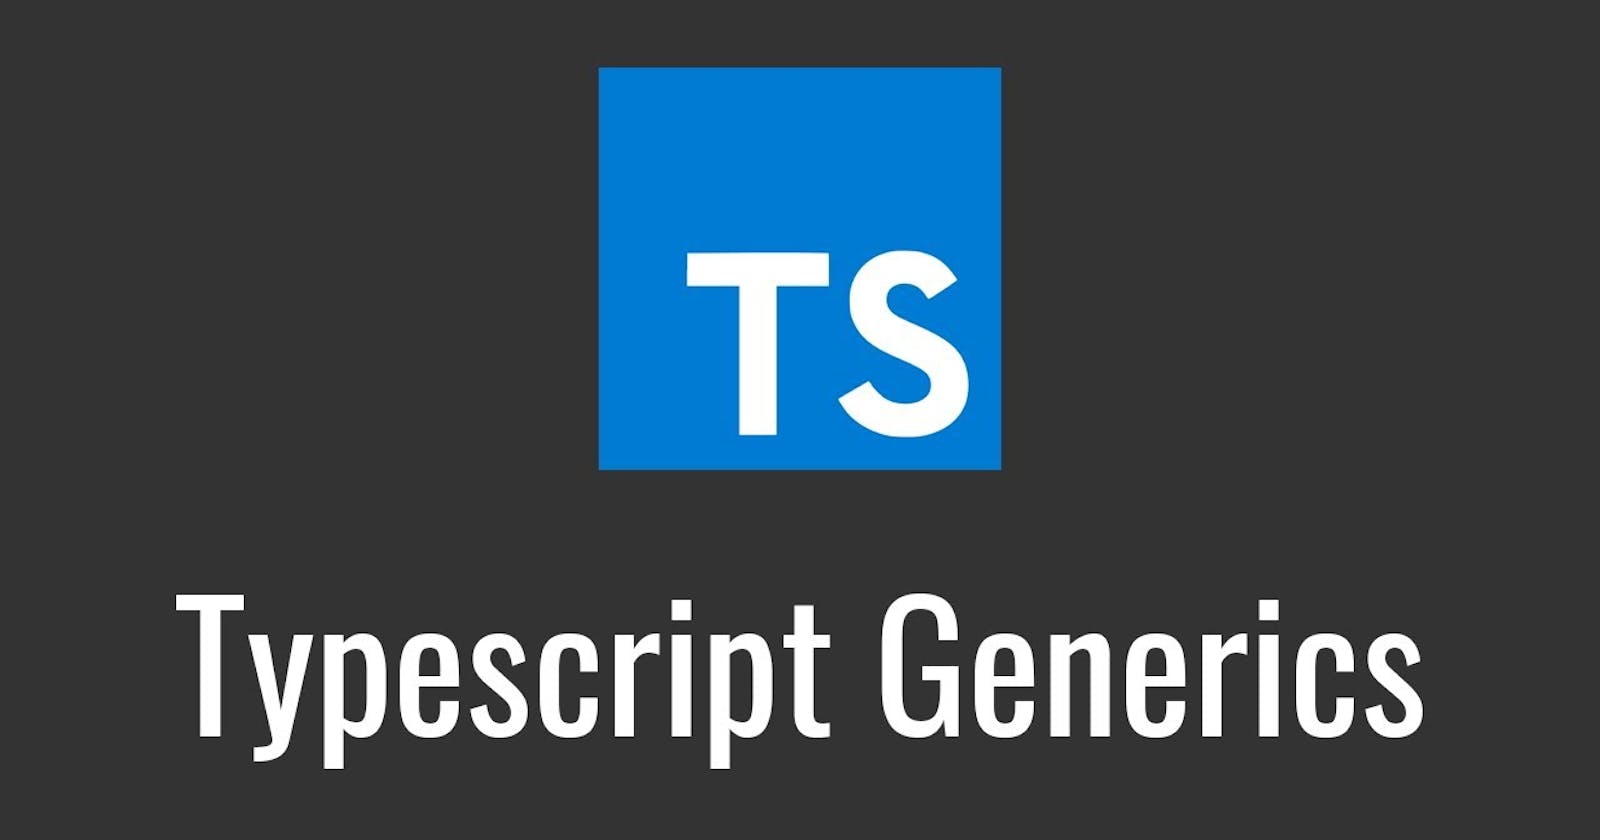 [TypeScript] Understanding <Generics>